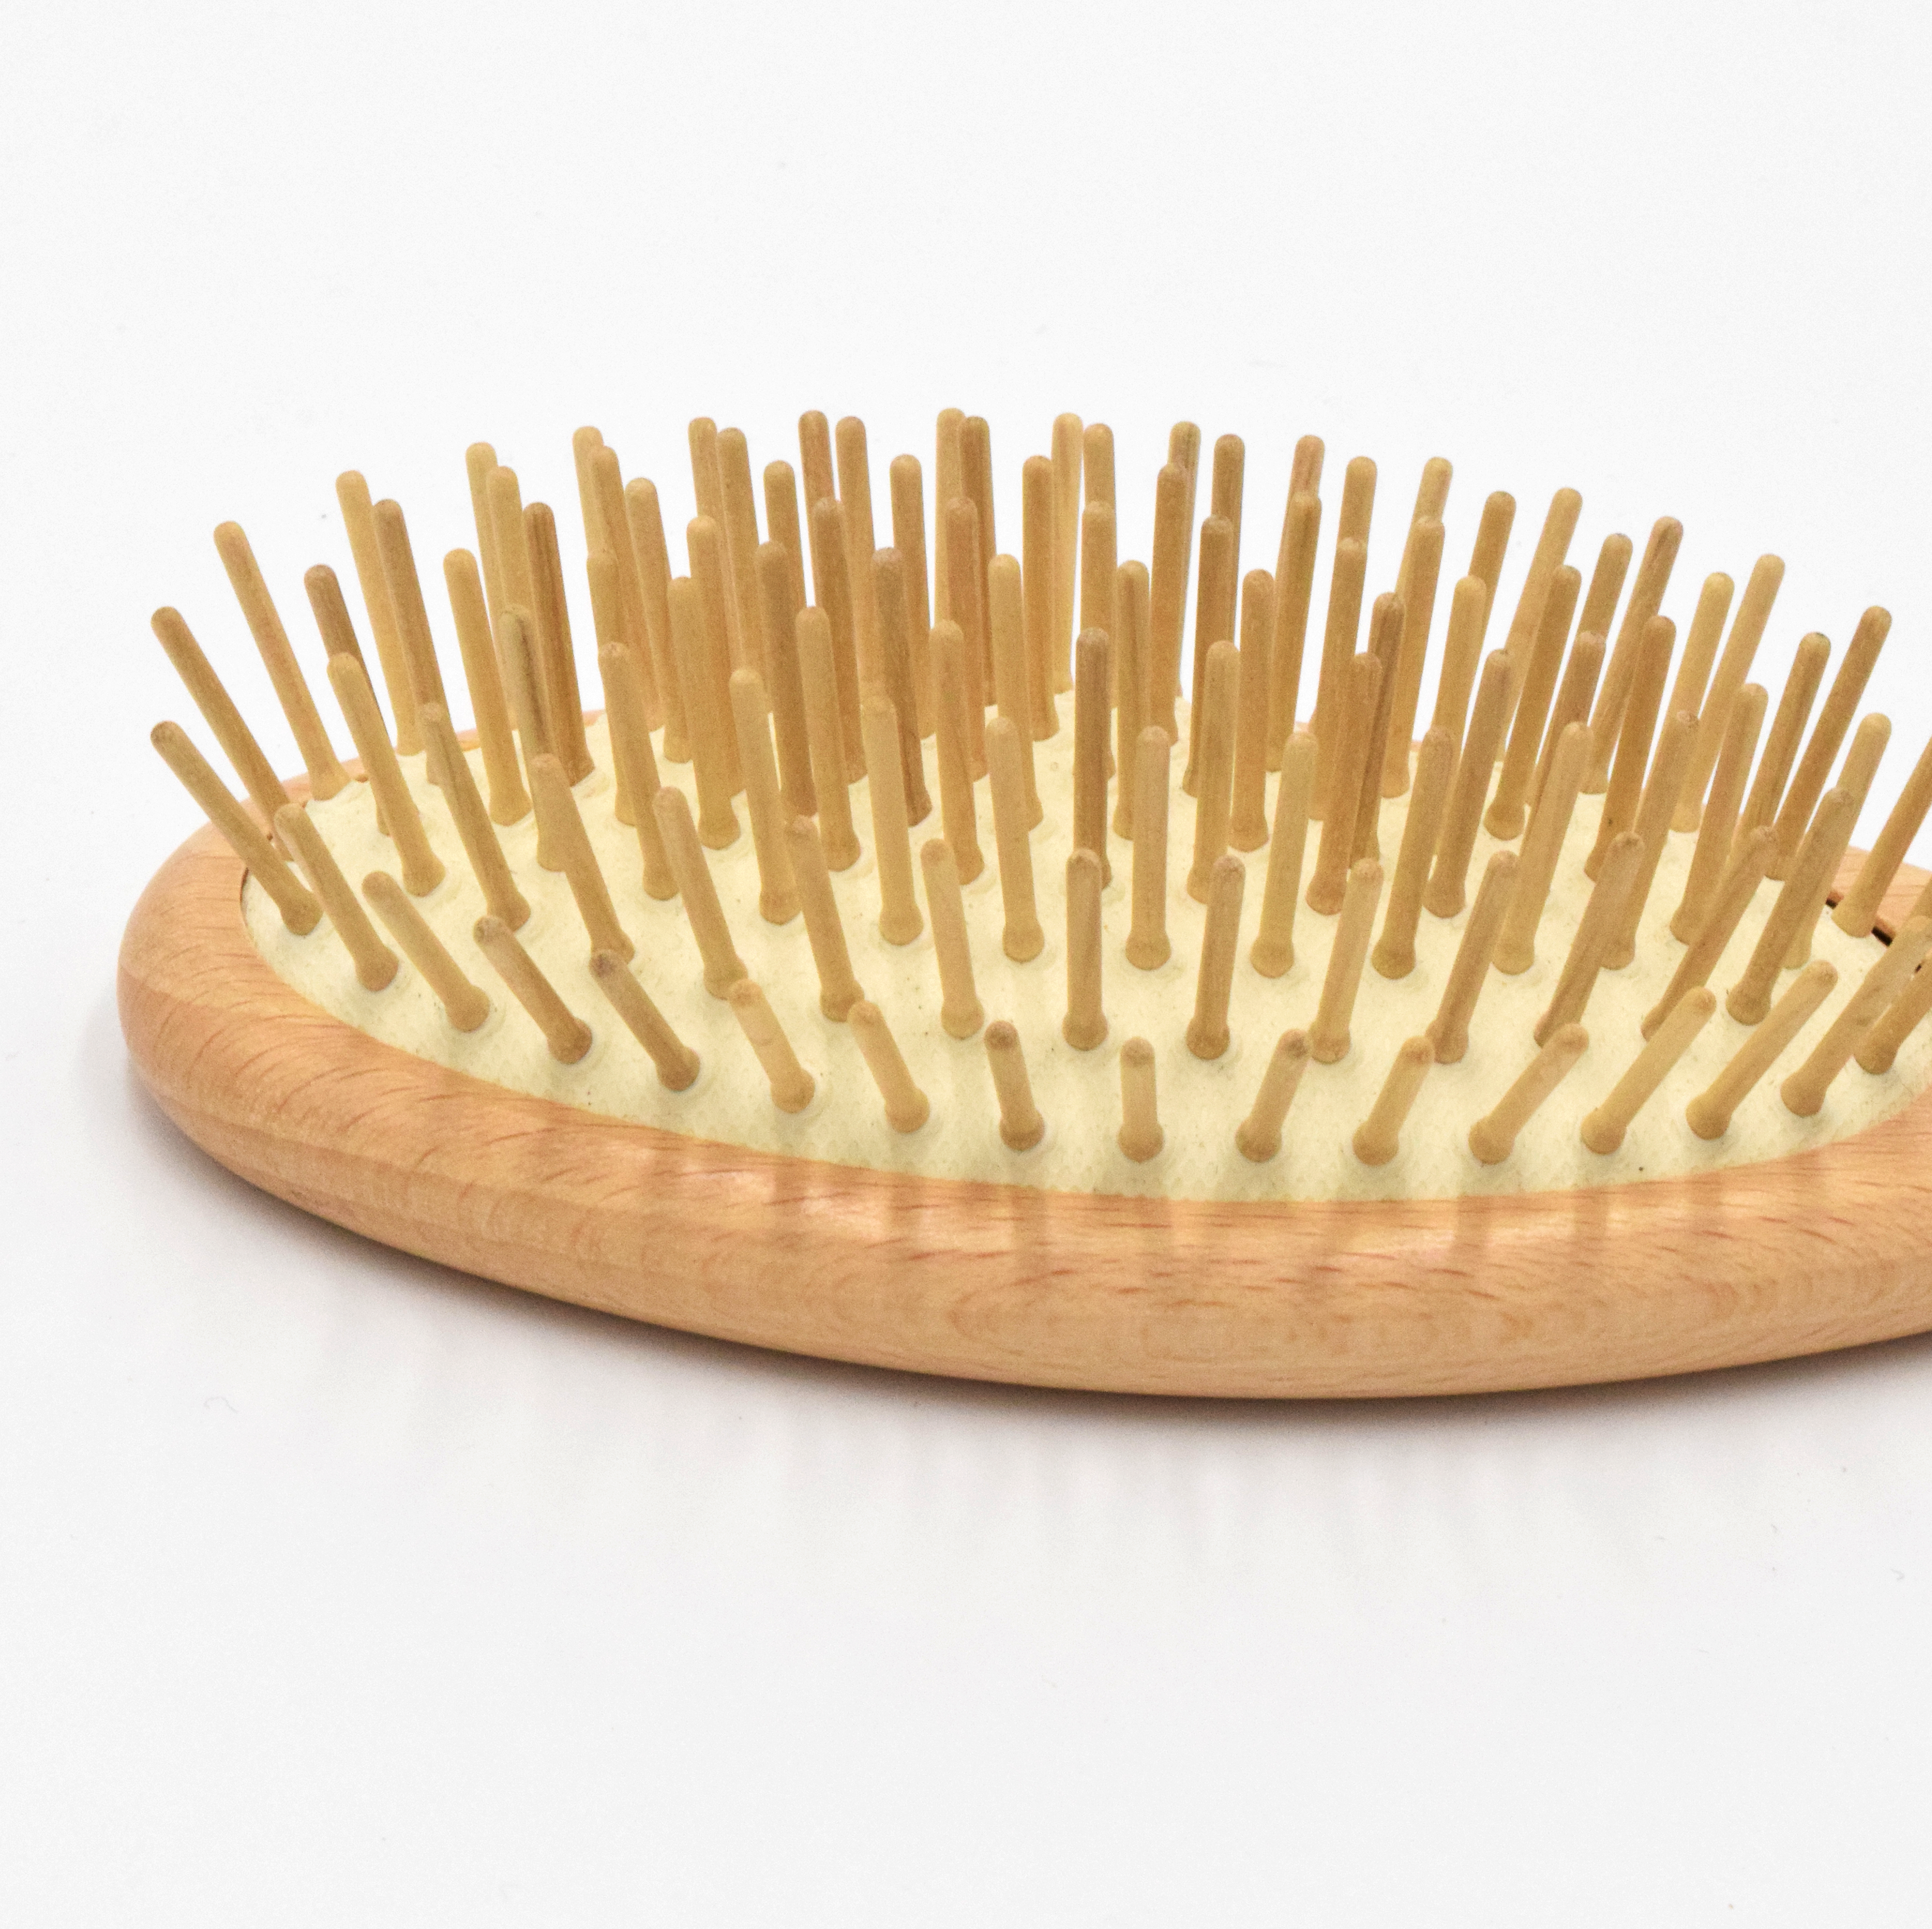 Hair Brush wood pins